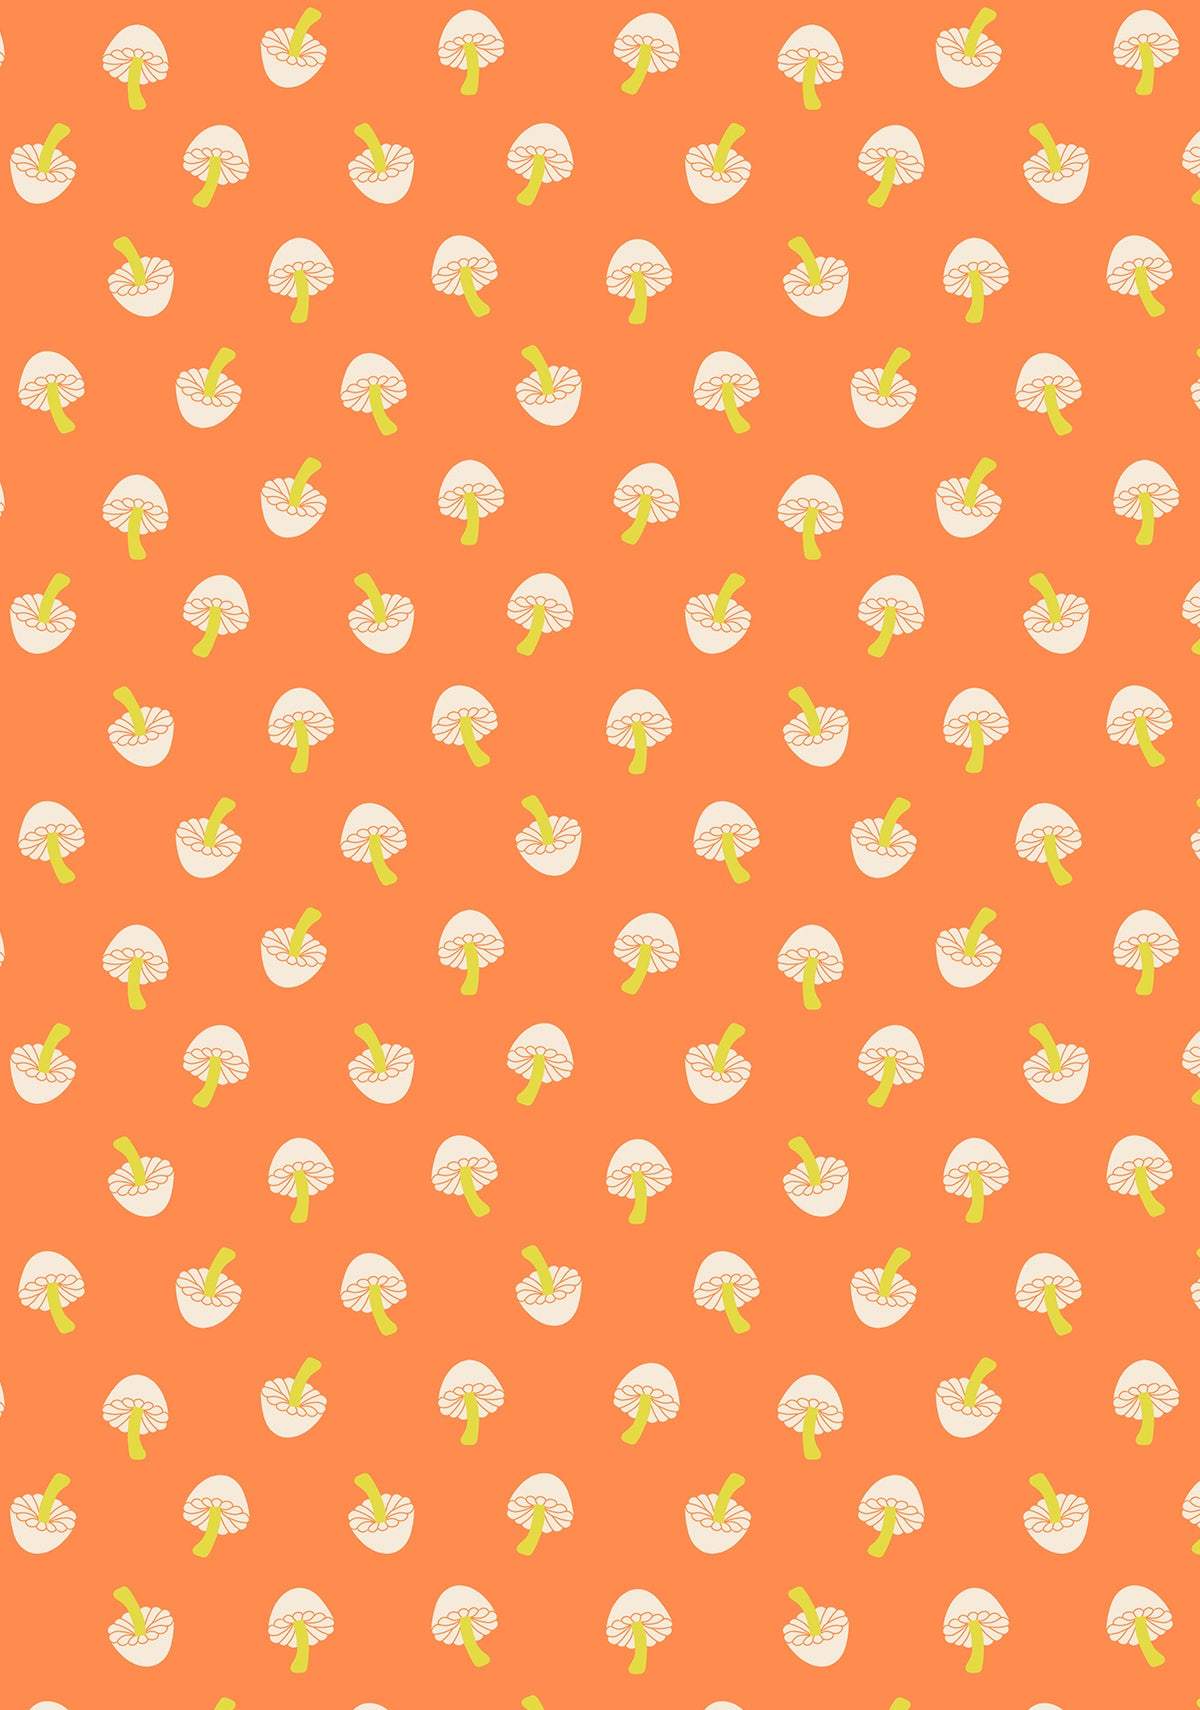 Tiny Frights Tiny Mushrooms By Ruby Star Society For Moda Pumpkin